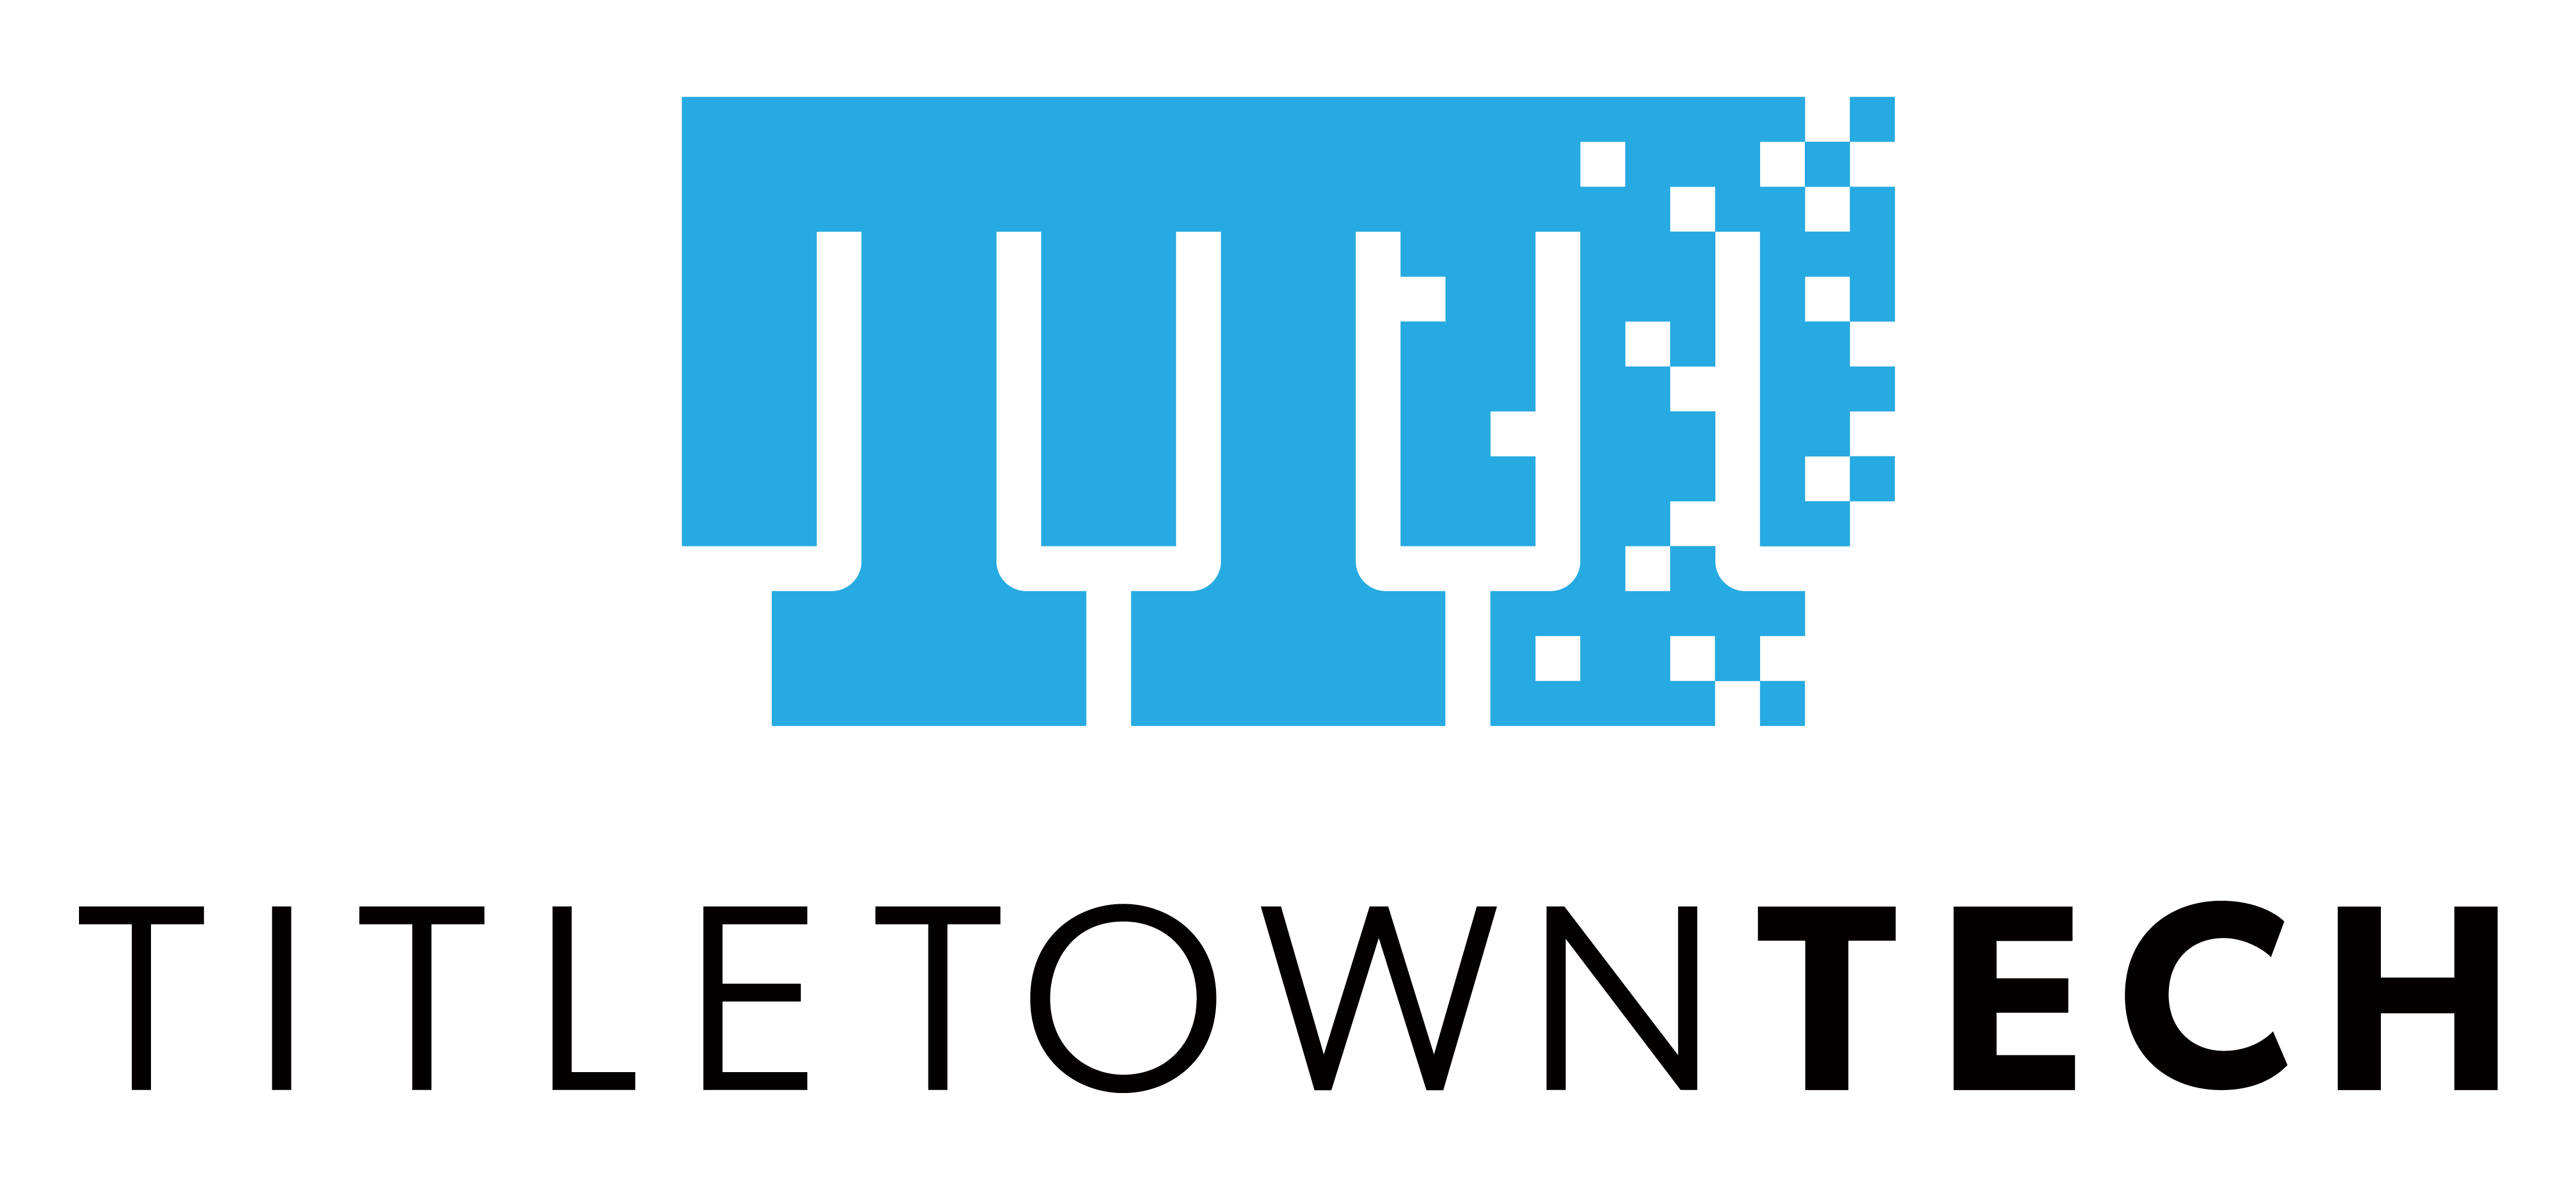 TitletownTech logo